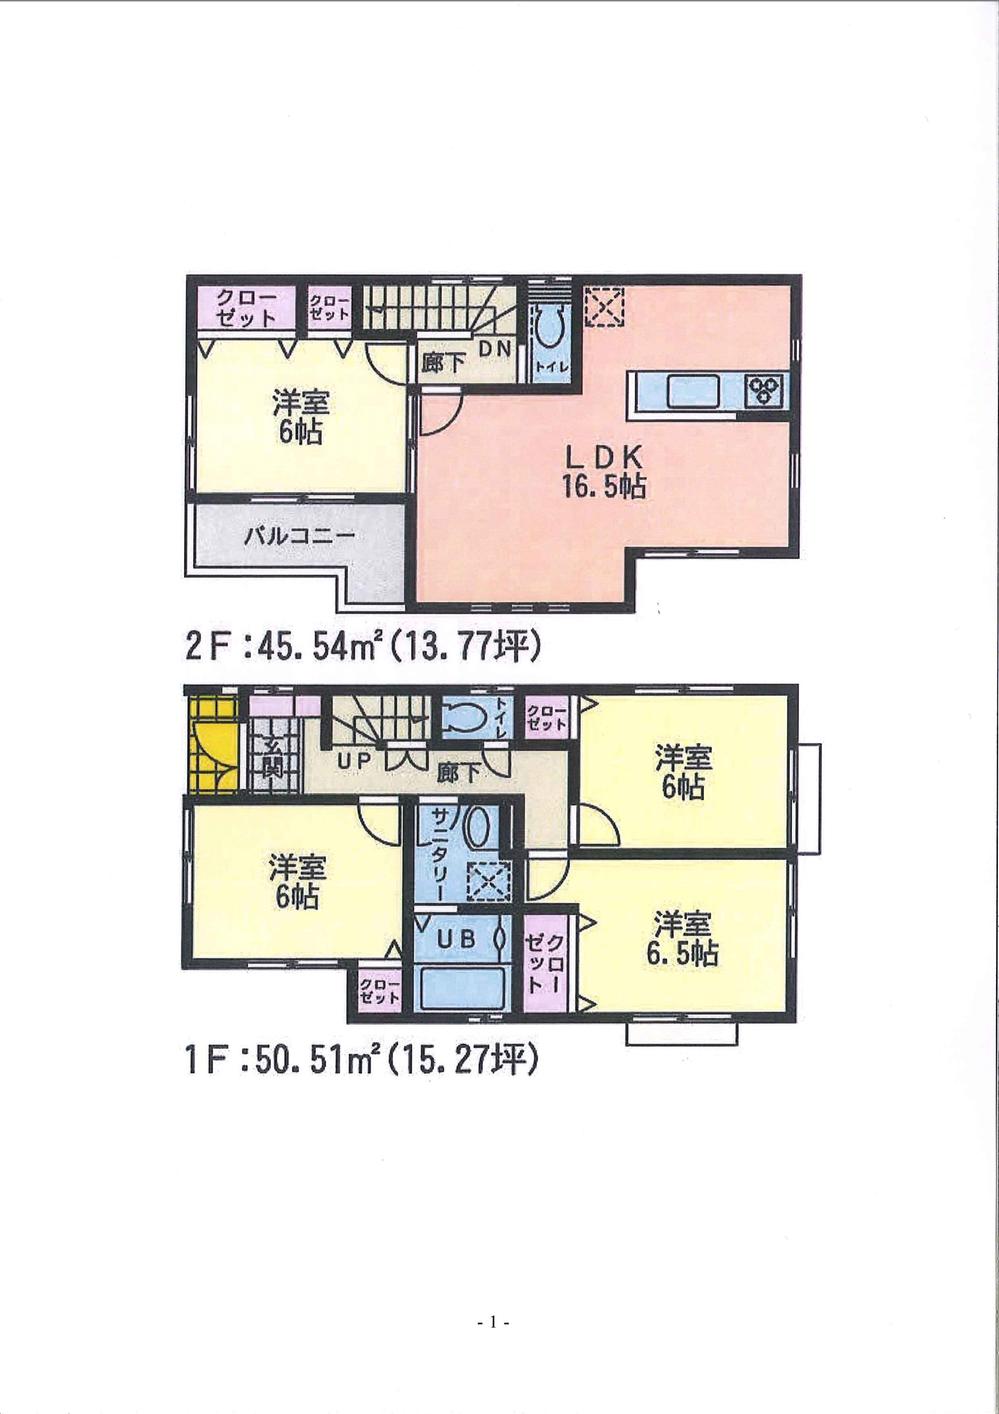 Floor plan. 44,800,000 yen, 4LDK, Land area 125 sq m , Building area 96.05 sq m 2 Building floor plan